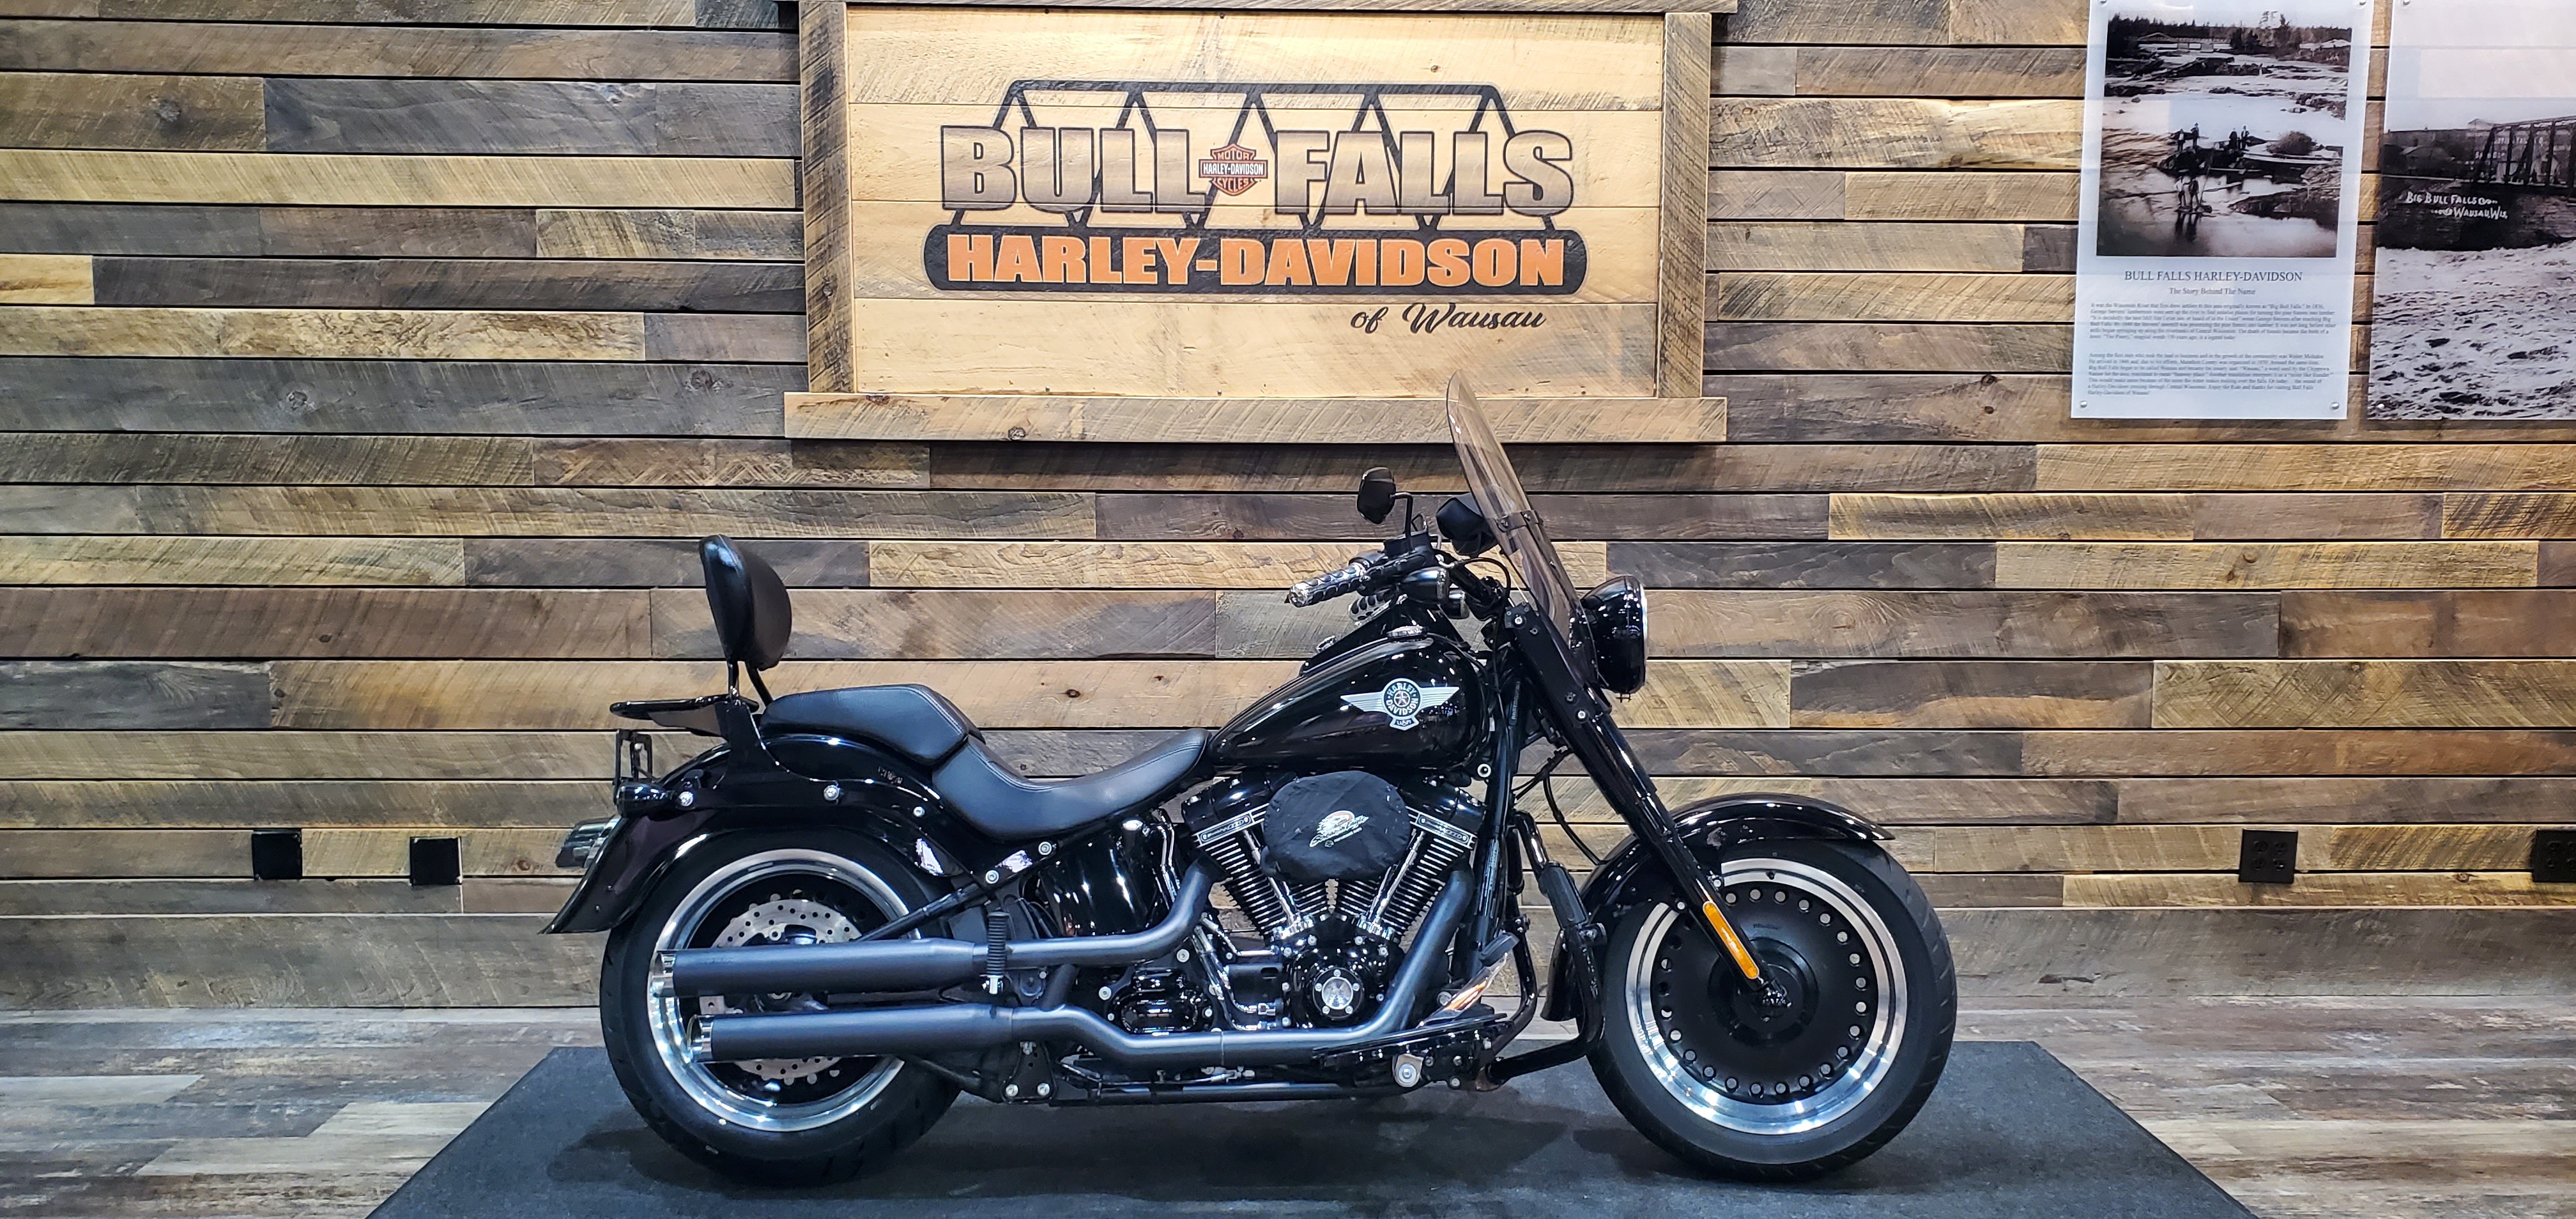 2016 Harley-Davidson S-Series Fat Boy at Bull Falls Harley-Davidson